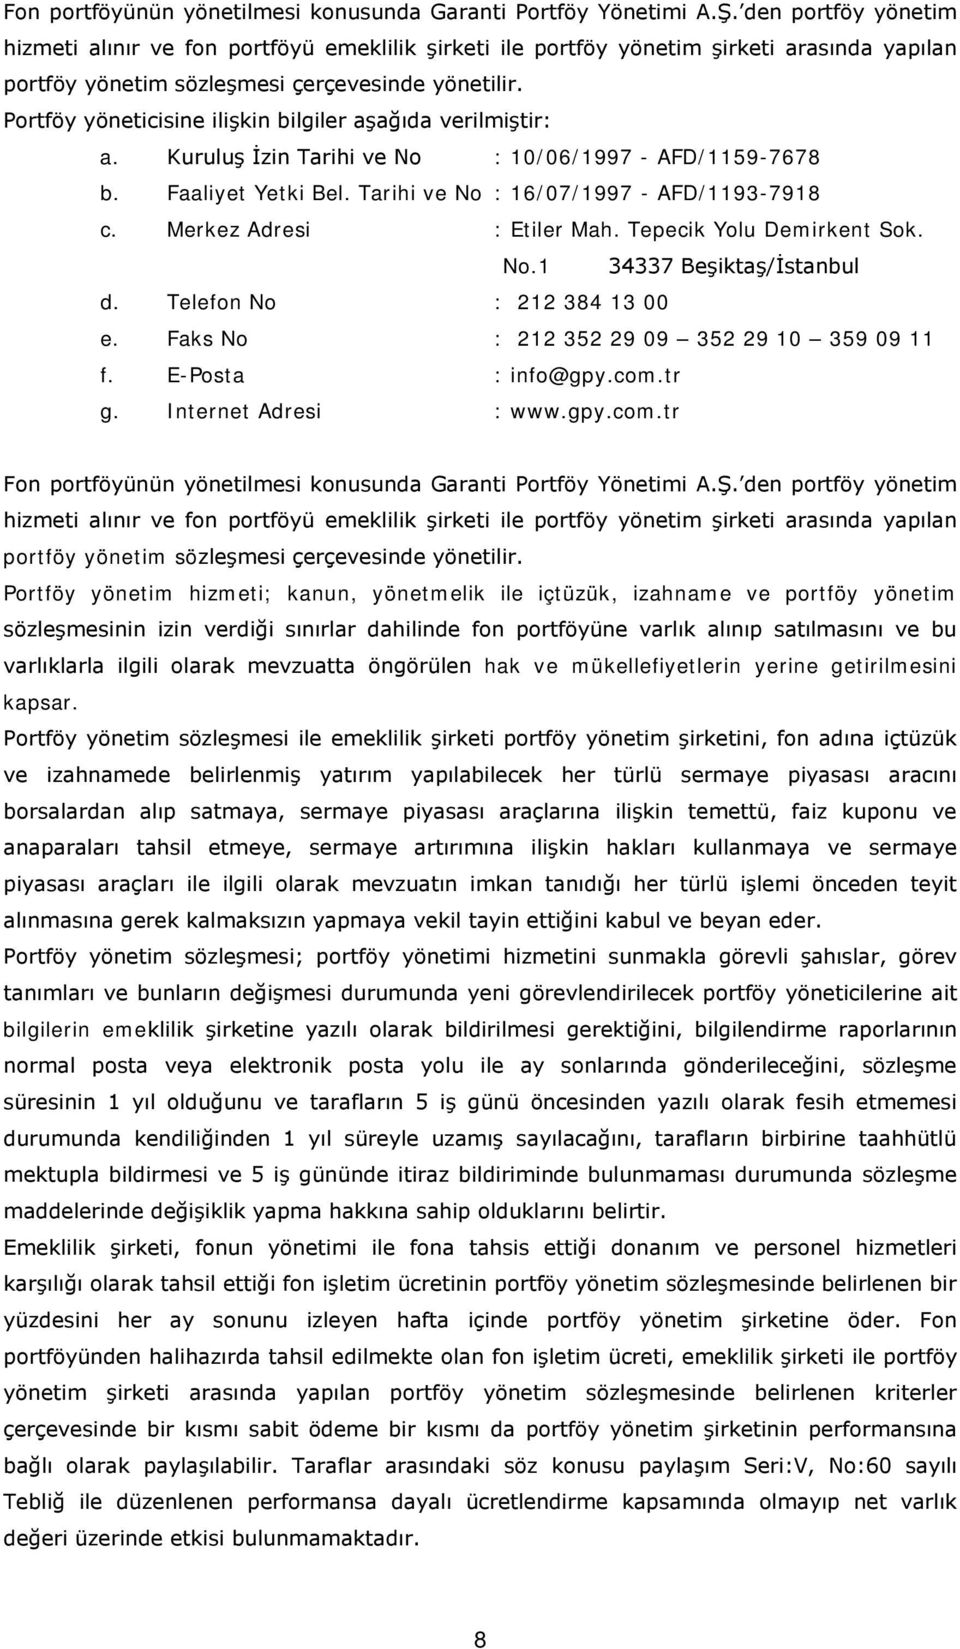 Portföy yöneticisine ilişkin bilgiler aşağıda verilmiştir: a. Kuruluş İzin Tarihi ve No : 10/06/1997 - AFD/1159-7678 b. Faaliyet Yetki Bel. Tarihi ve No : 16/07/1997 - AFD/1193-7918 c.